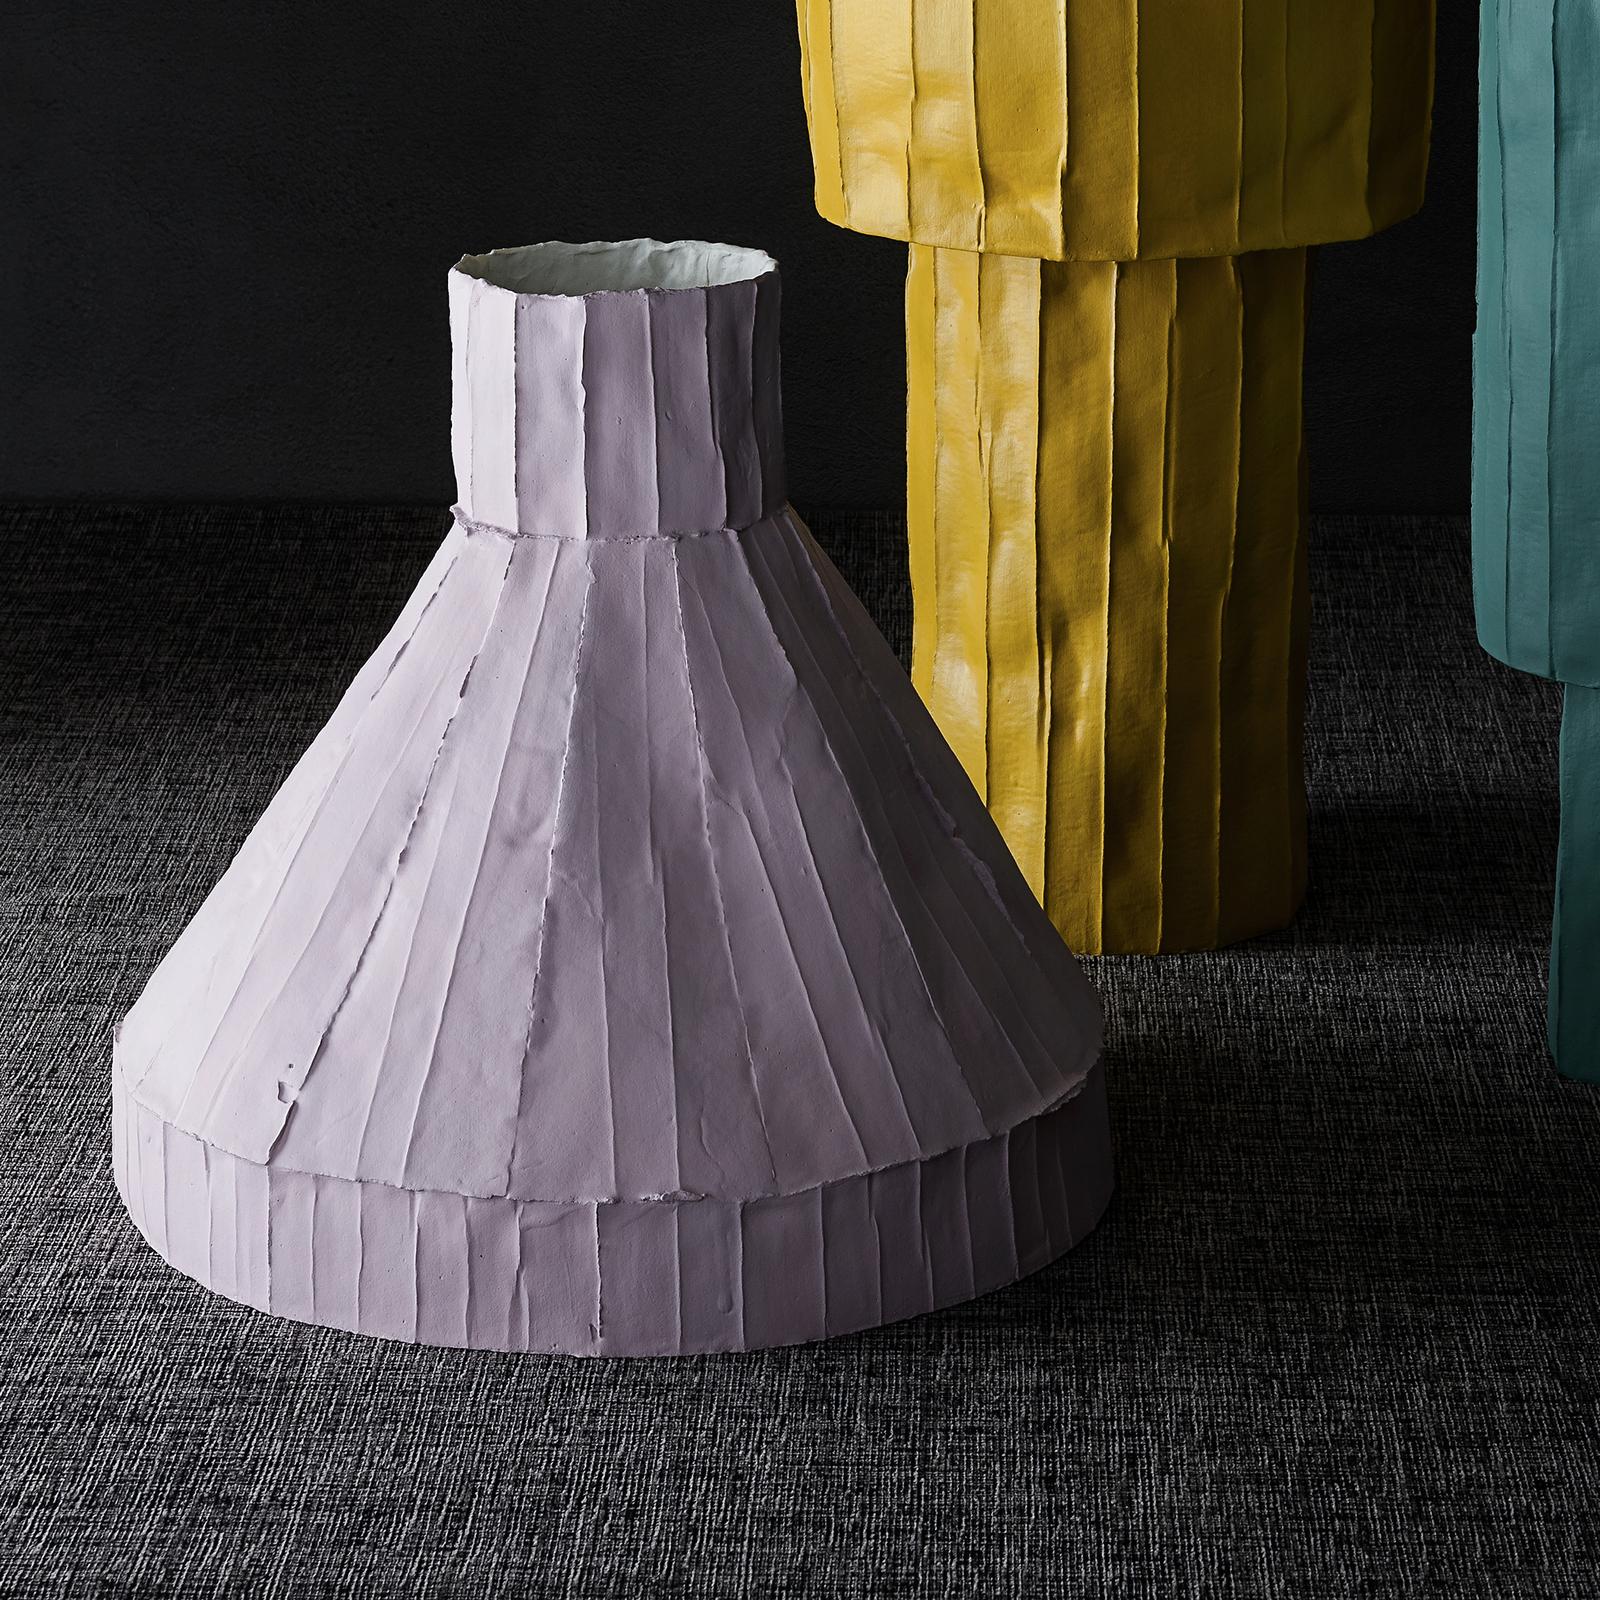 Modern Contemporary Ceramic Vulcano Corteccia Texture Lilac Low Vase For Sale